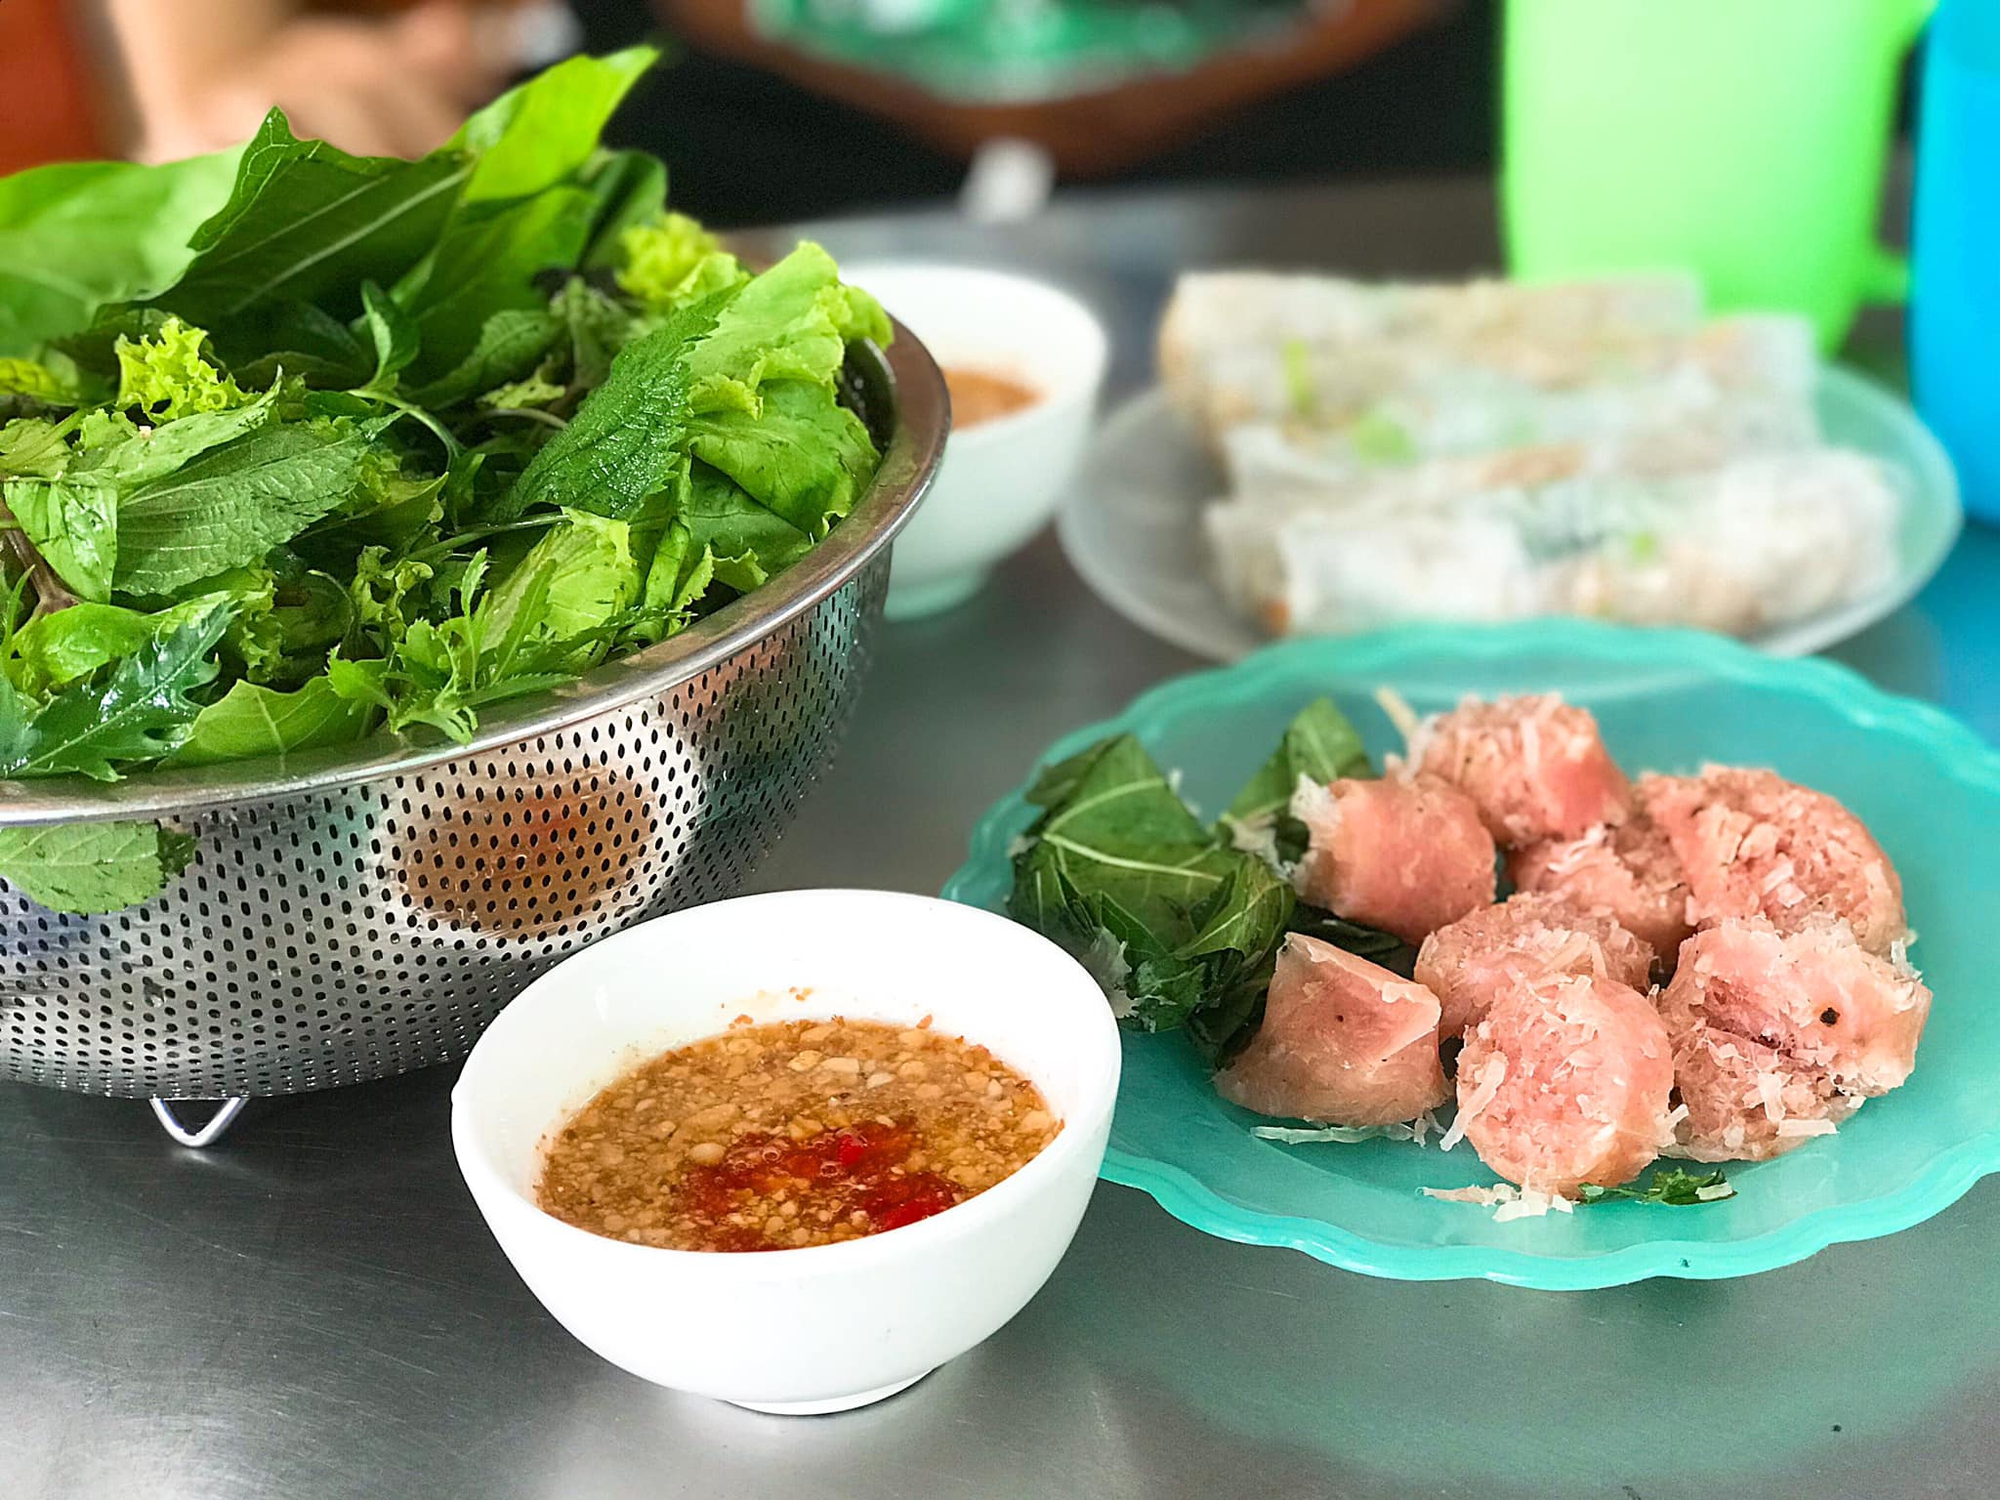 Nem chua - Niềm tự hào mang đậm dấu ấn ẩm thực của người dân xứ Thanh - 4